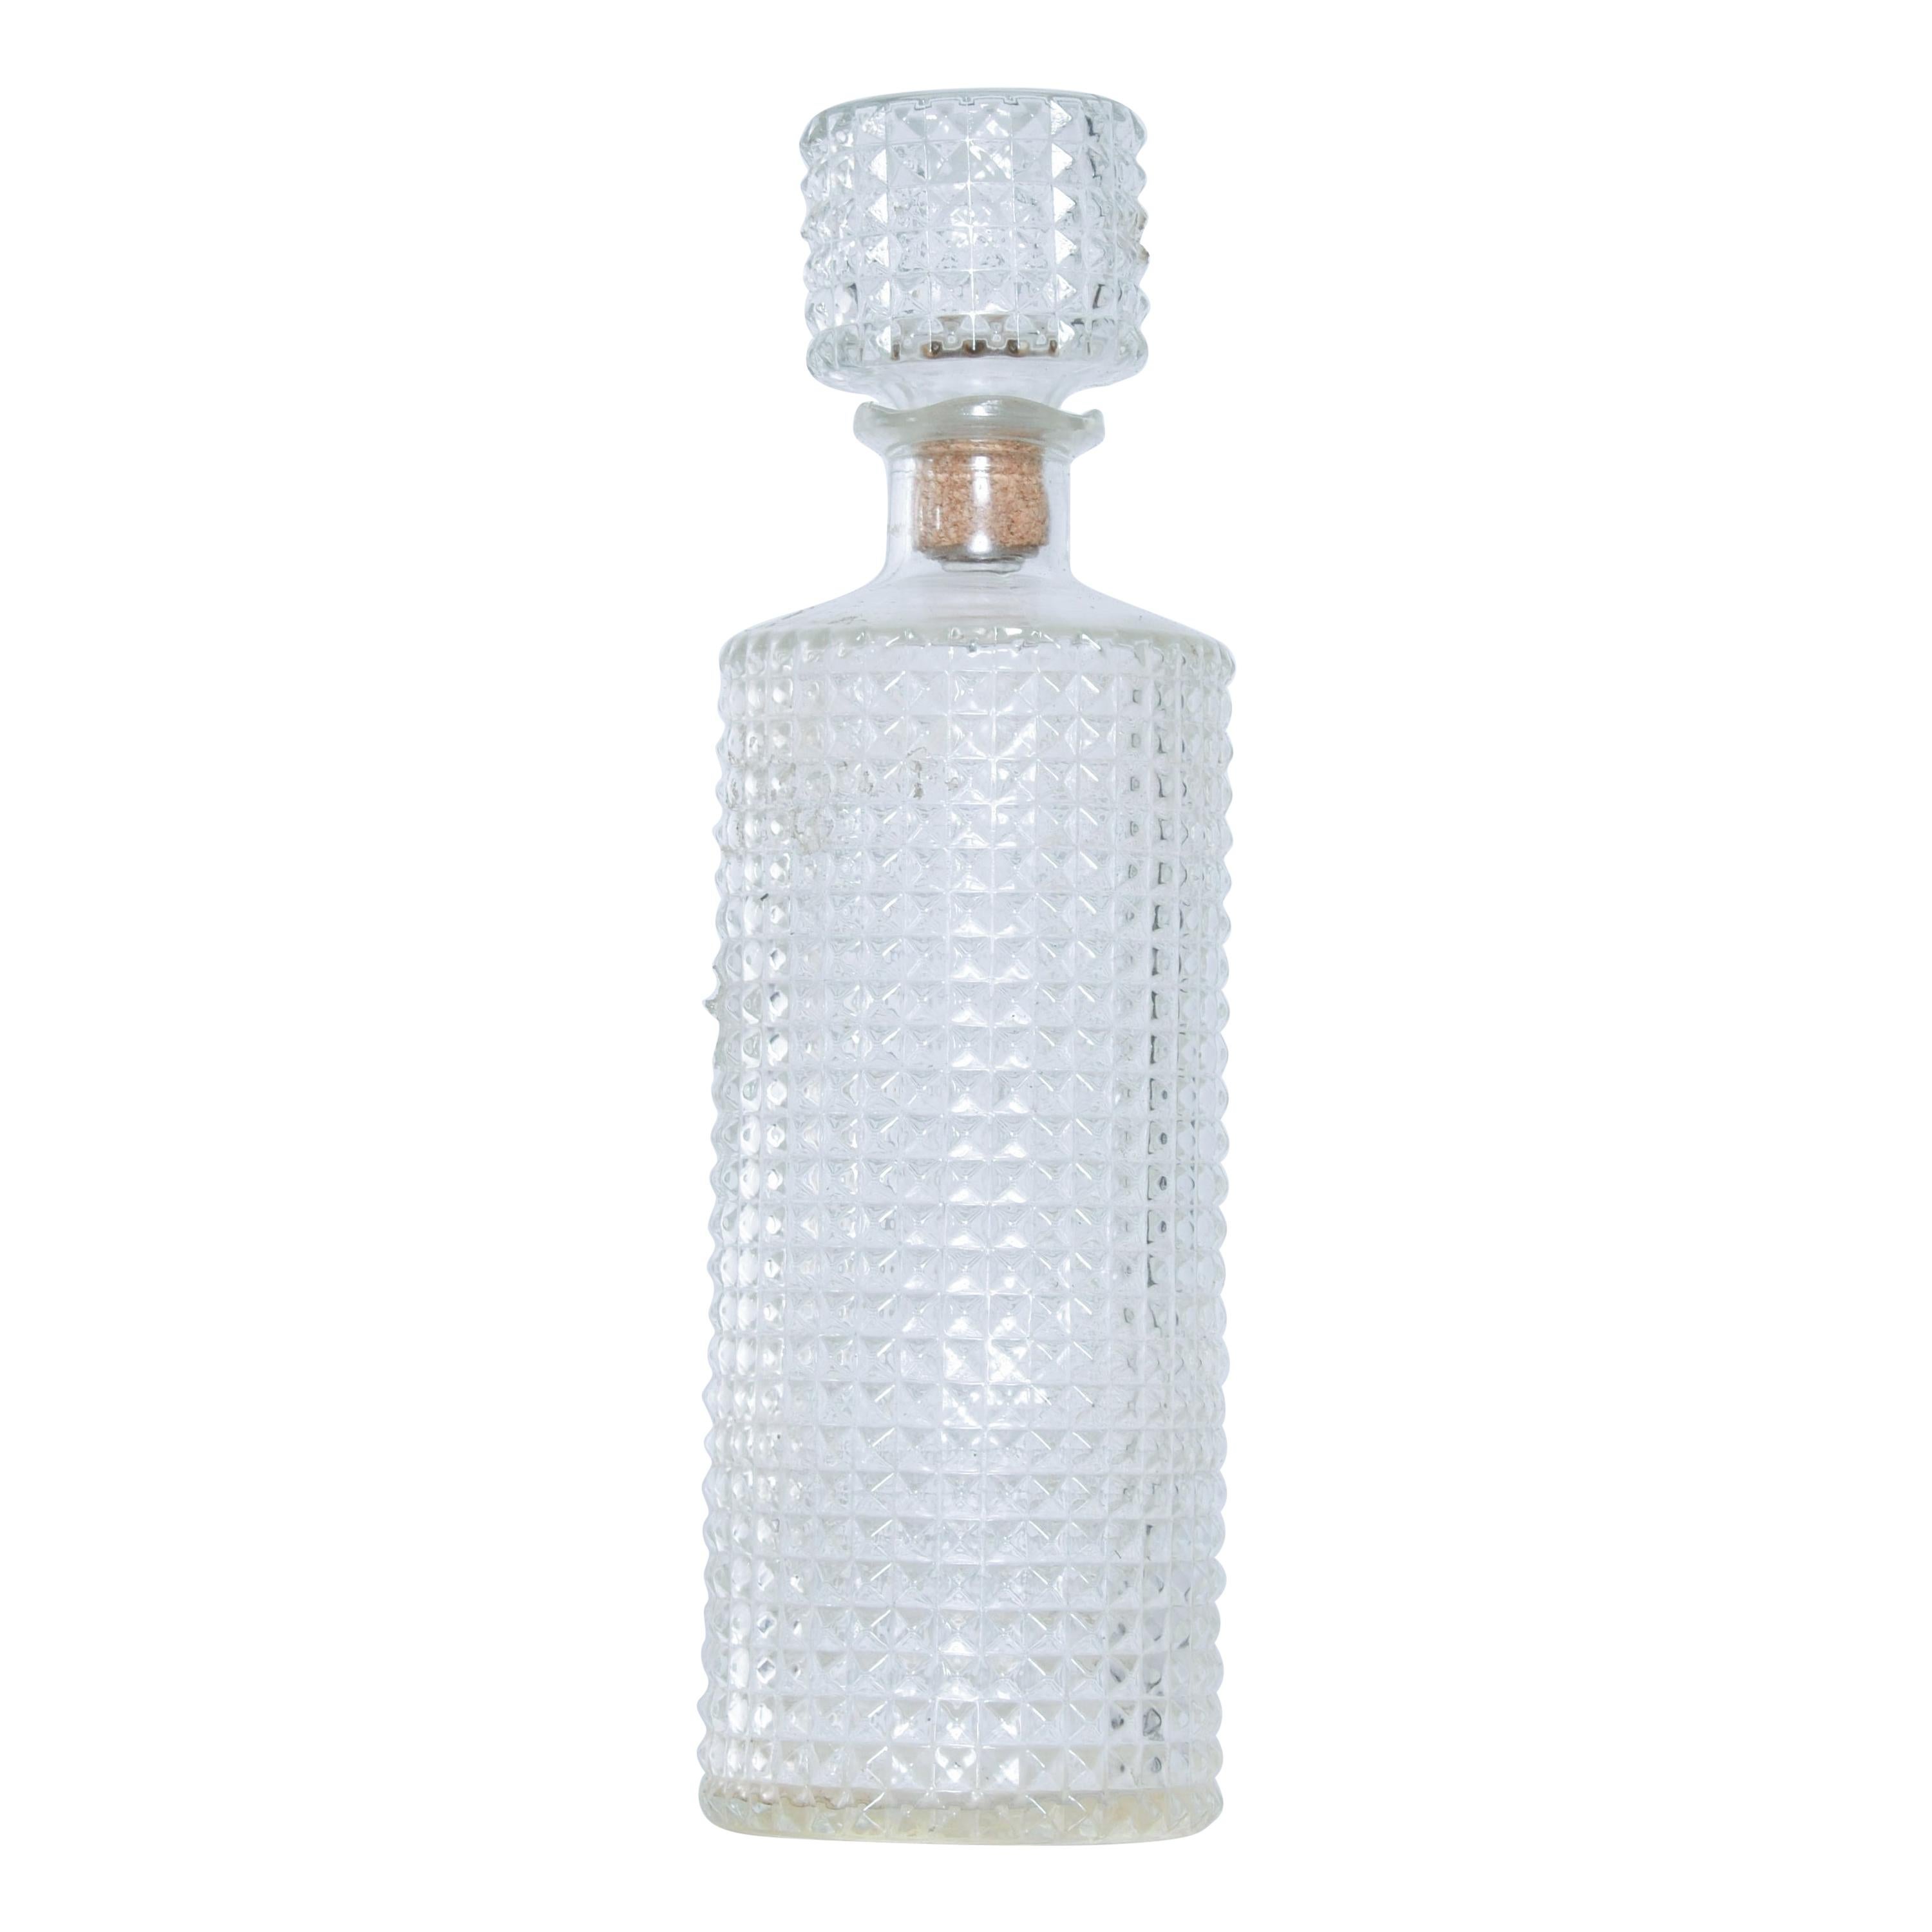 Vintage Modern Whiskey Bottle Decanter Diamond Cut-Glass Cork Stopper, 1970s